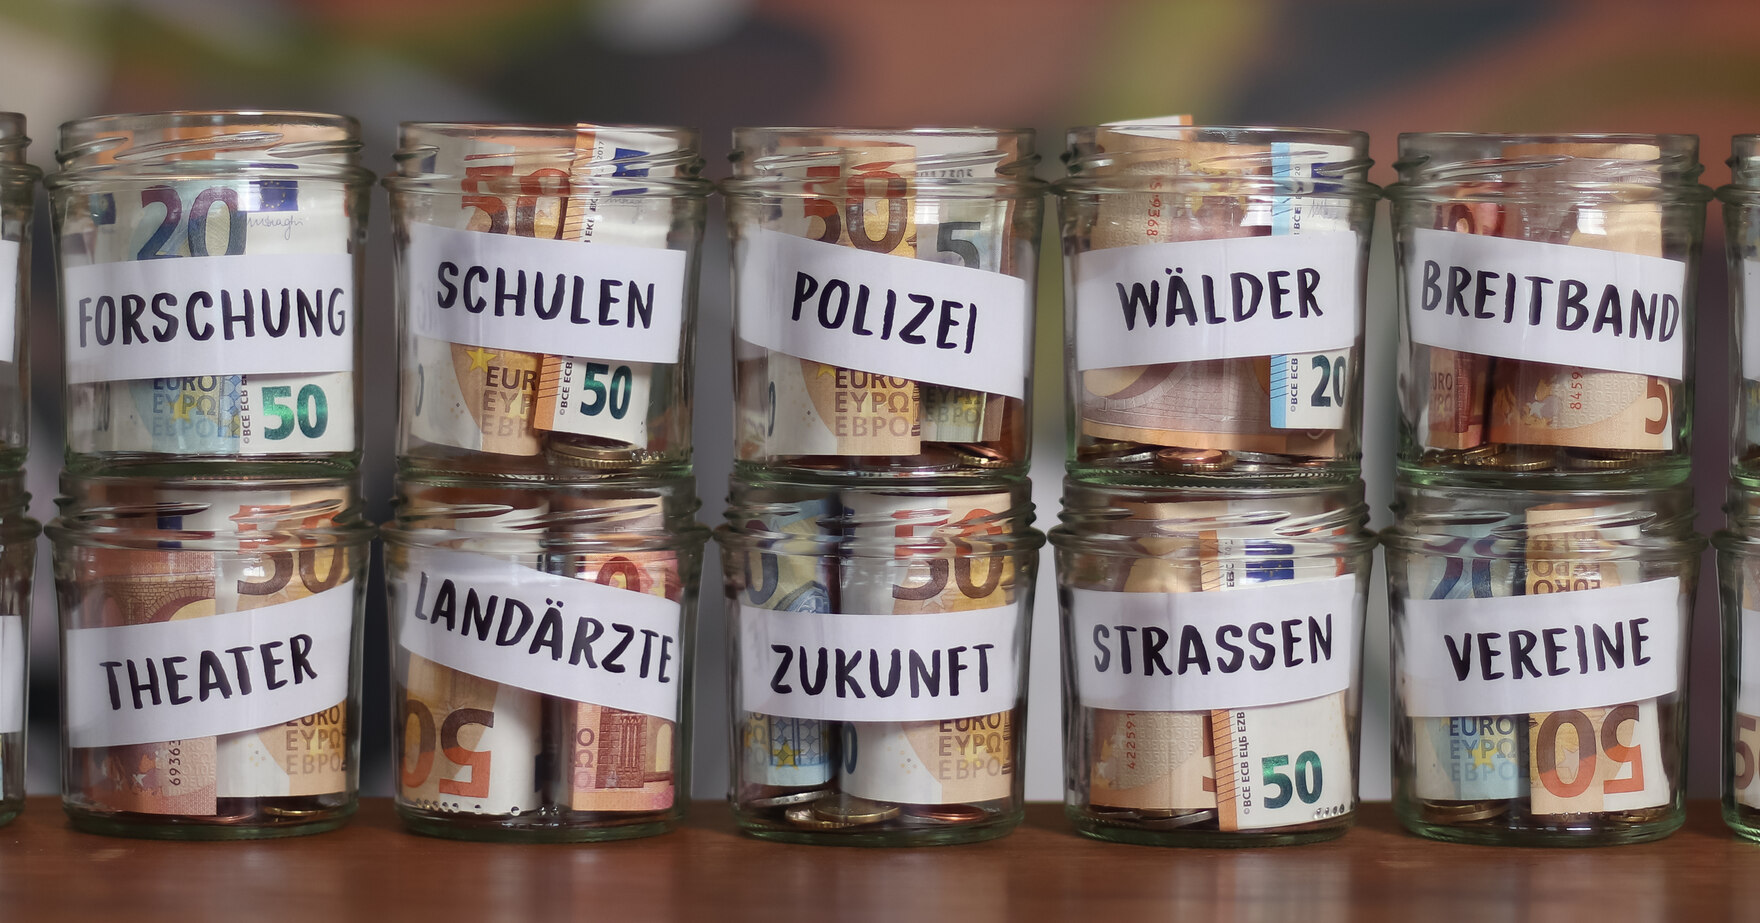 Gestapelte Gläser, in denen Geldscheine sind. Jedes Glas steht dabei für eine Verwendung der Gelder. Zum Beispiel Forschung, Schulen, Polizei und Kultur.